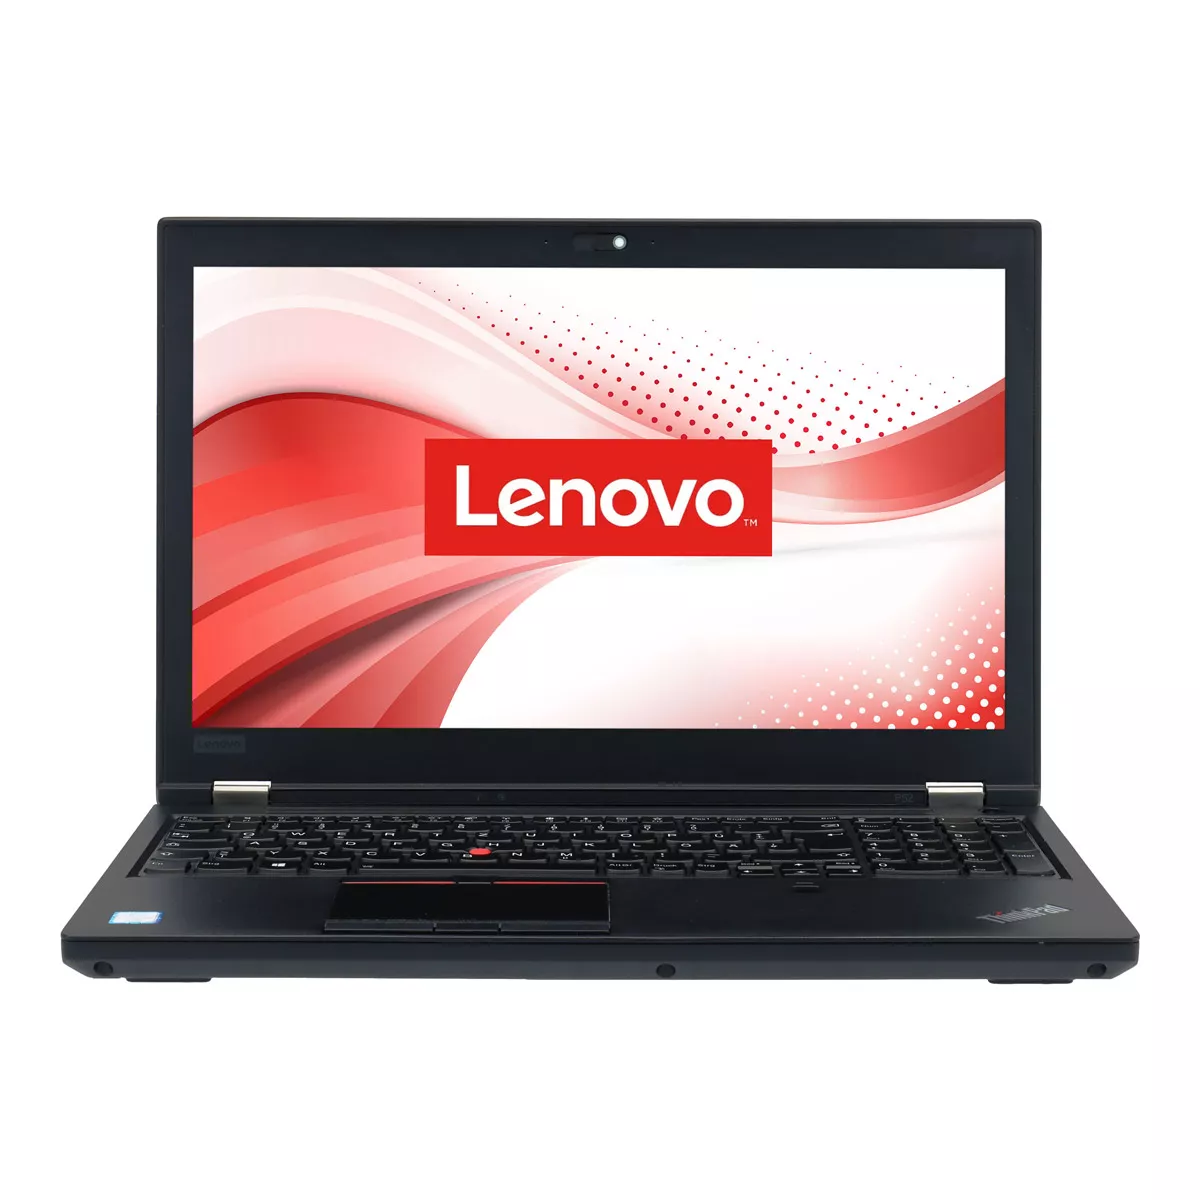 Lenovo ThinkPad P52 Core i7 8750H nVidia Quadro P1000M 16 GB 1 TB M.2 SSD Webcam A+